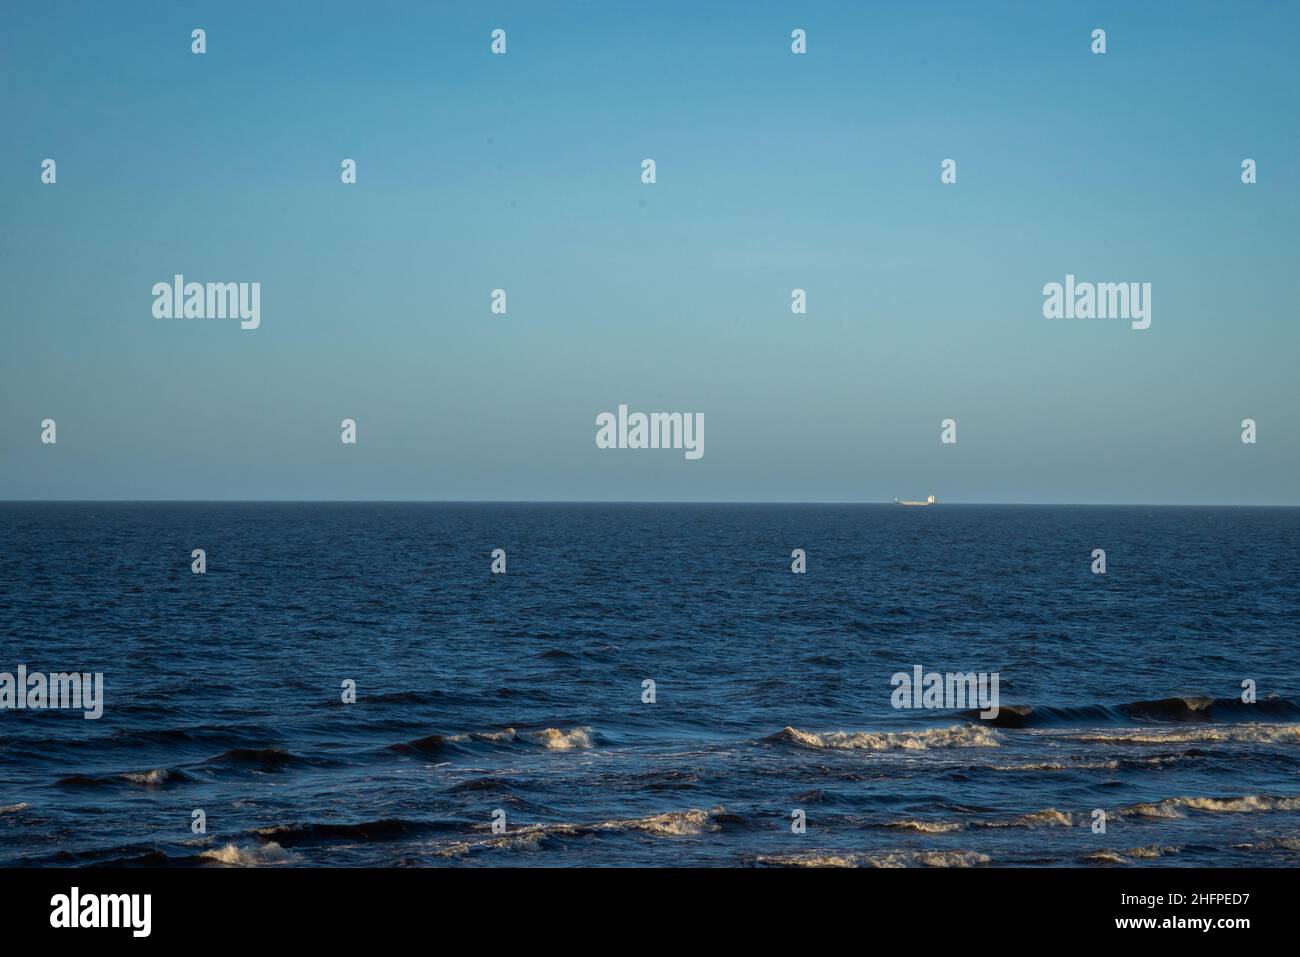 Paysage de mer avec eau bleue et vagues avec mousse blanche.Un navire de transport peut être vu à la distance à l'horizon. Banque D'Images